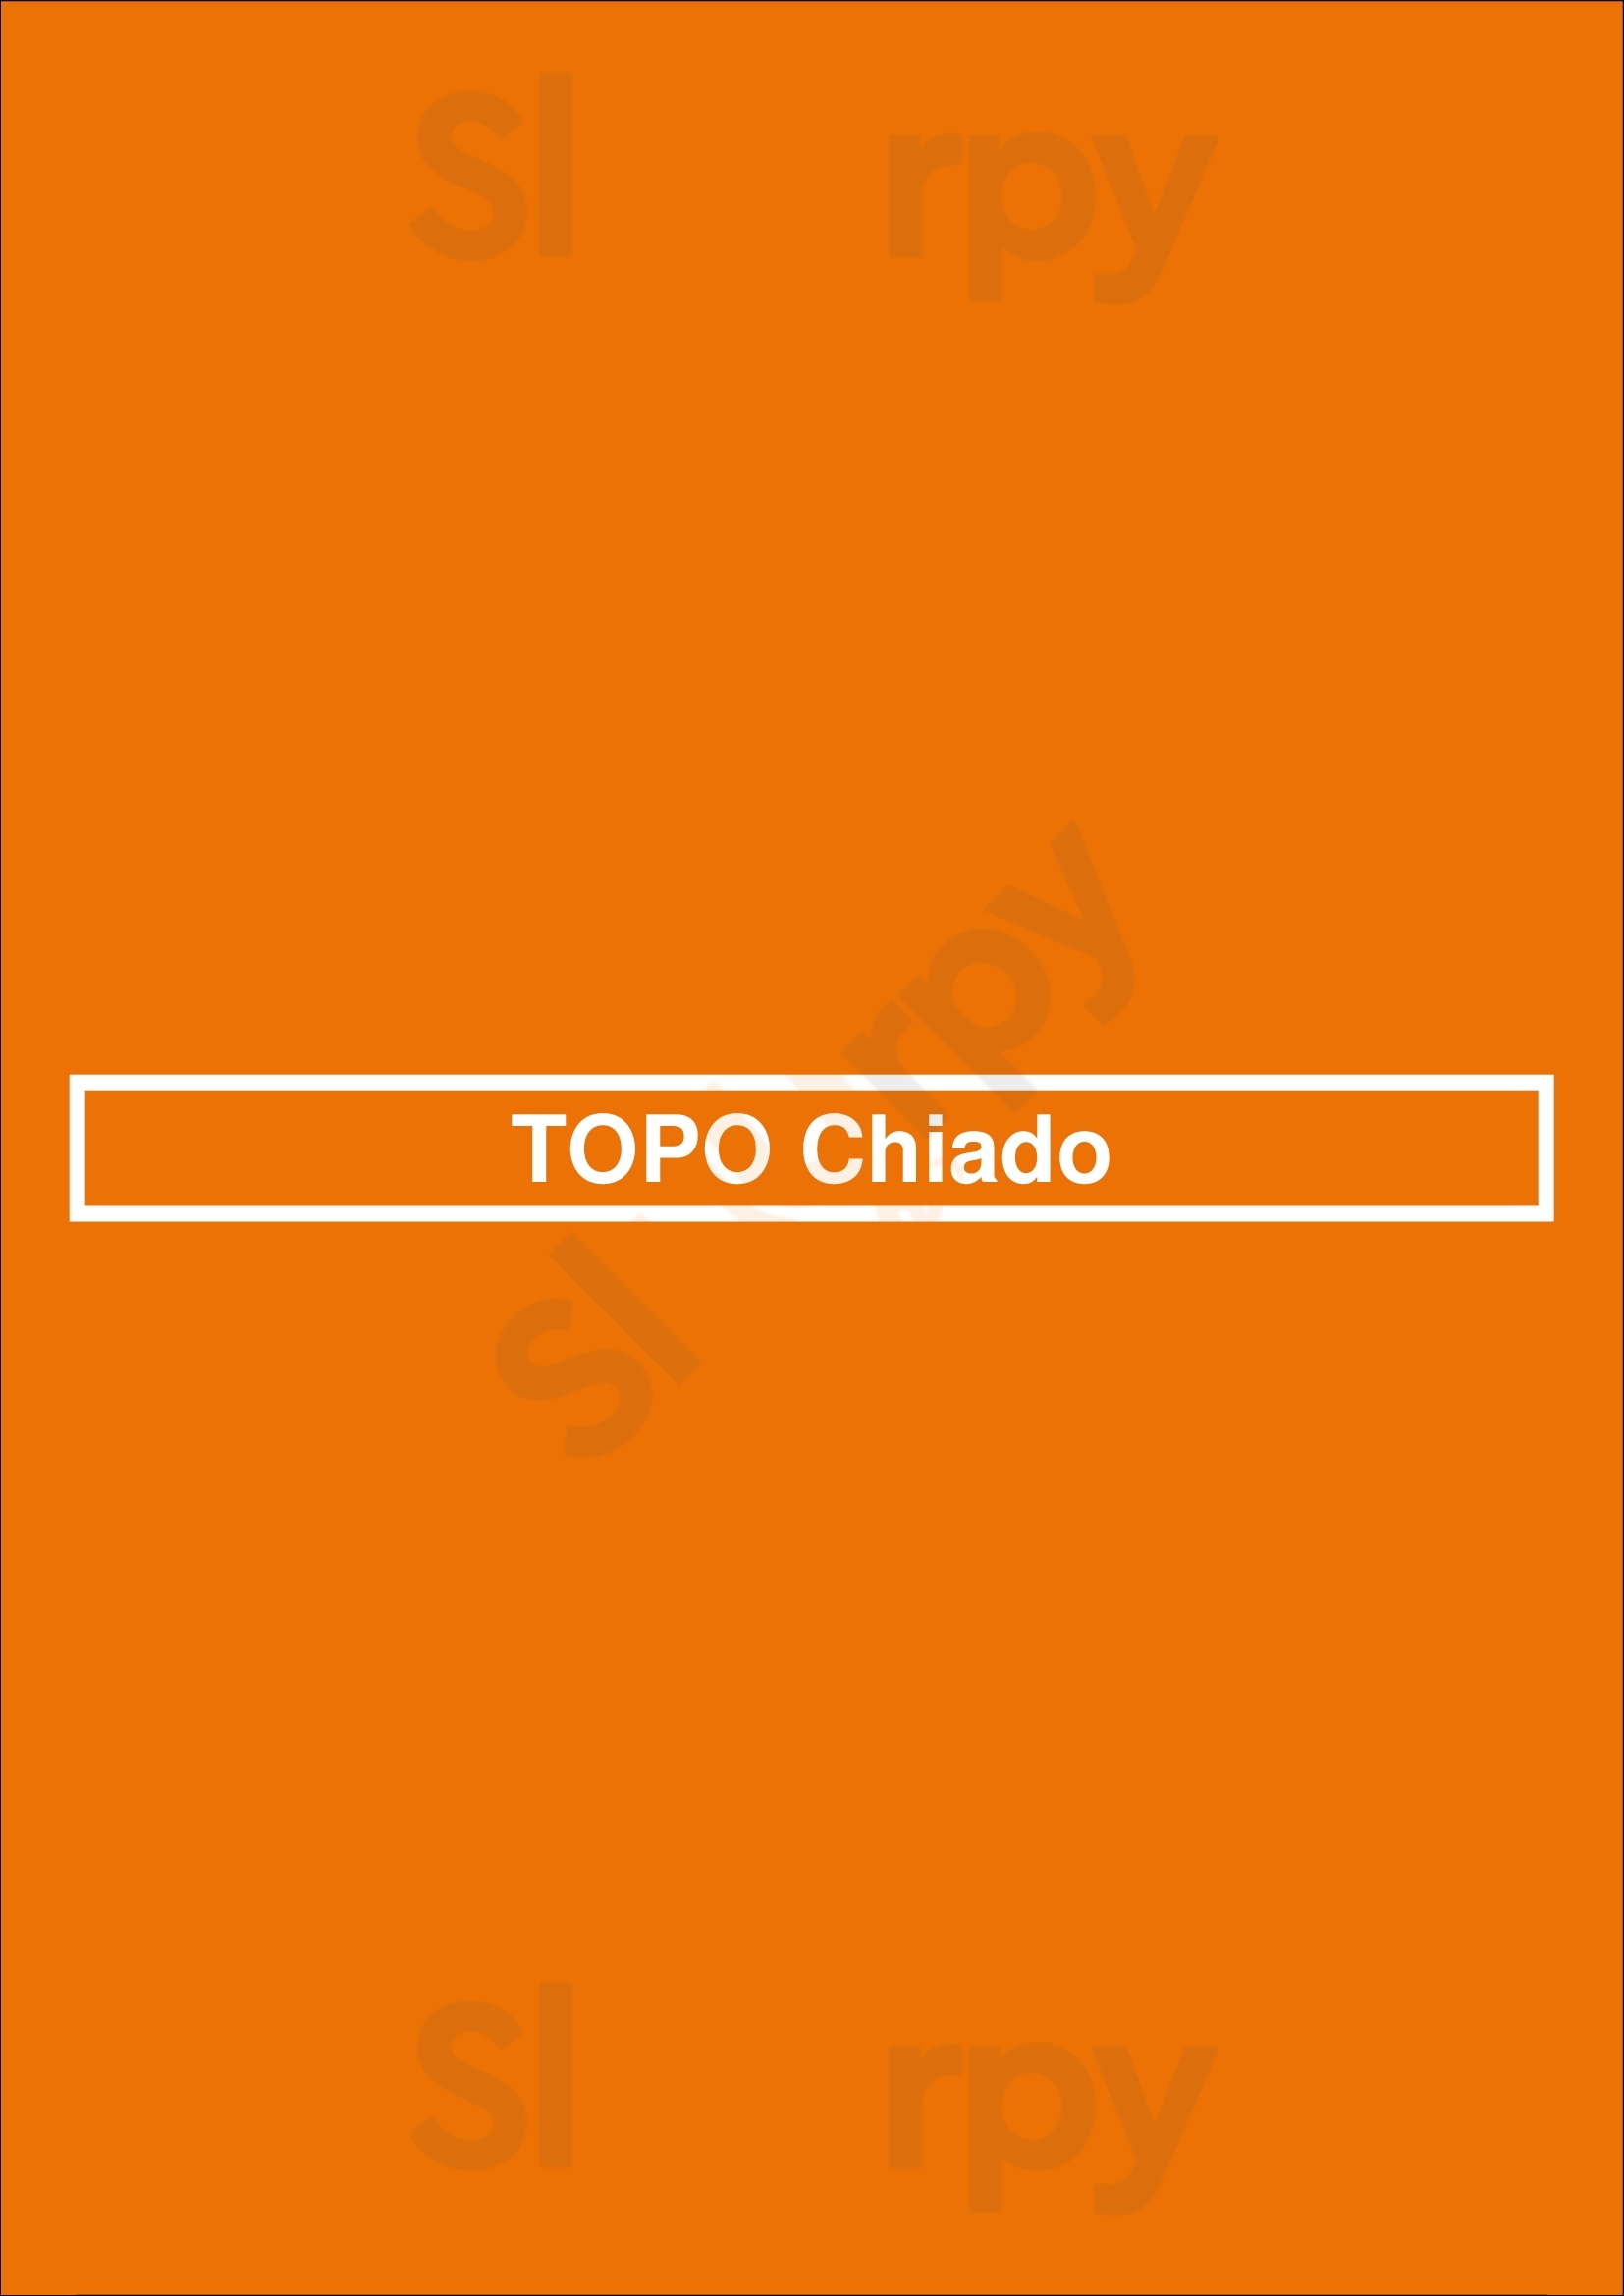 Topo Chiado Lisboa Menu - 1